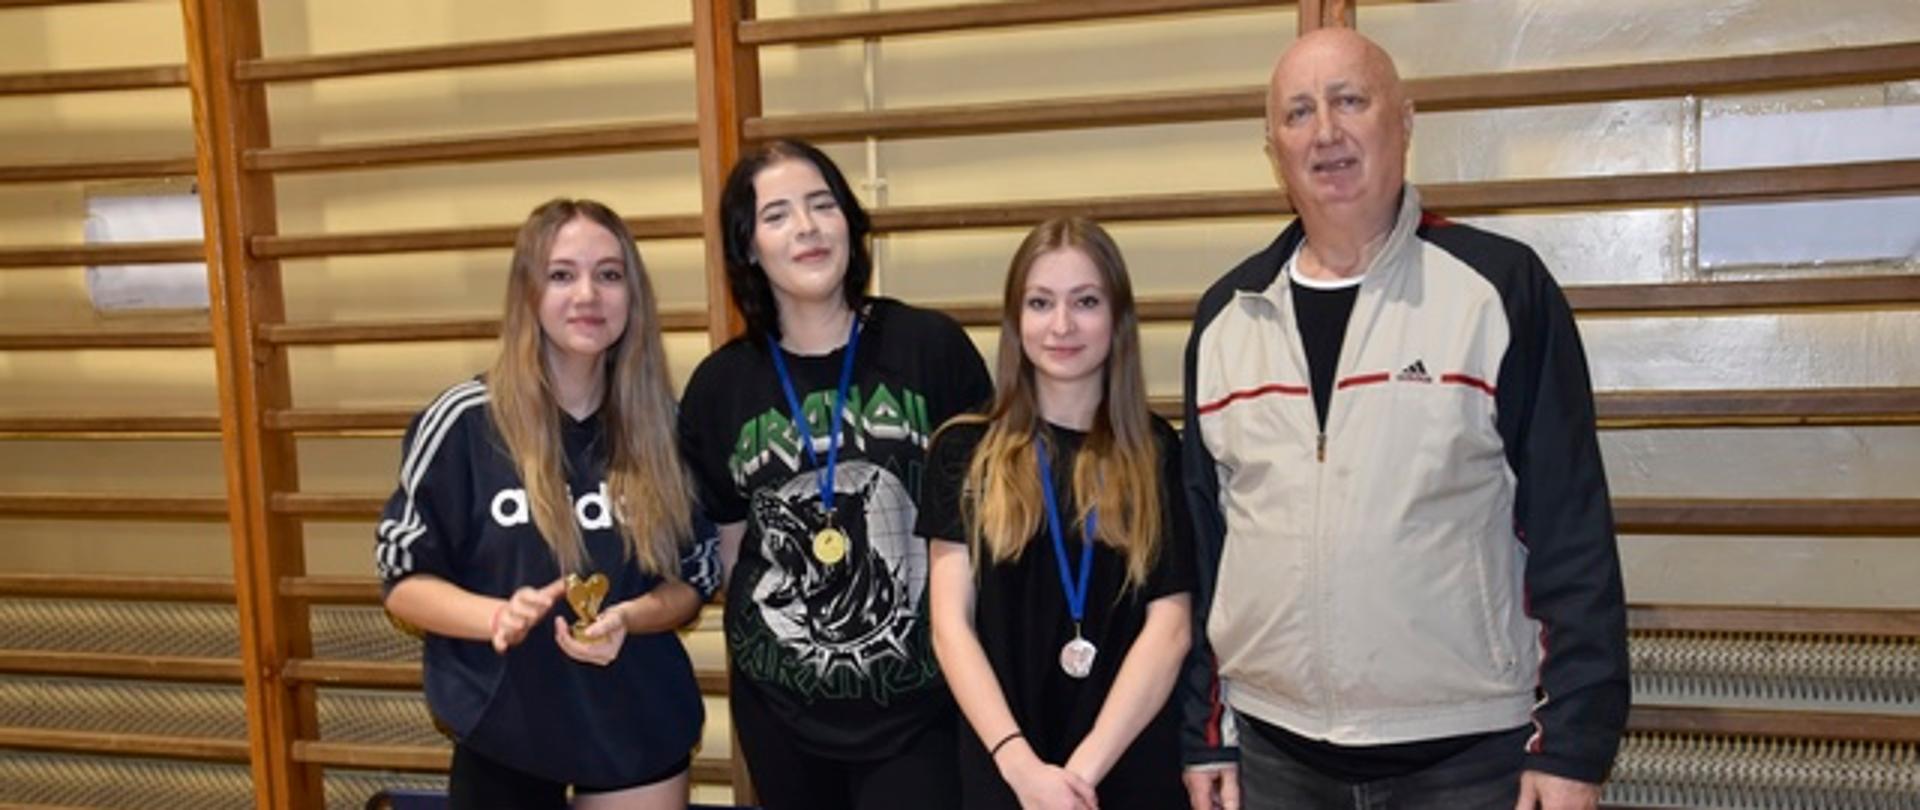 Dekoracja dziewcząt szkół średnich - trzy dziewczyny z medalami stoją z organizatorem